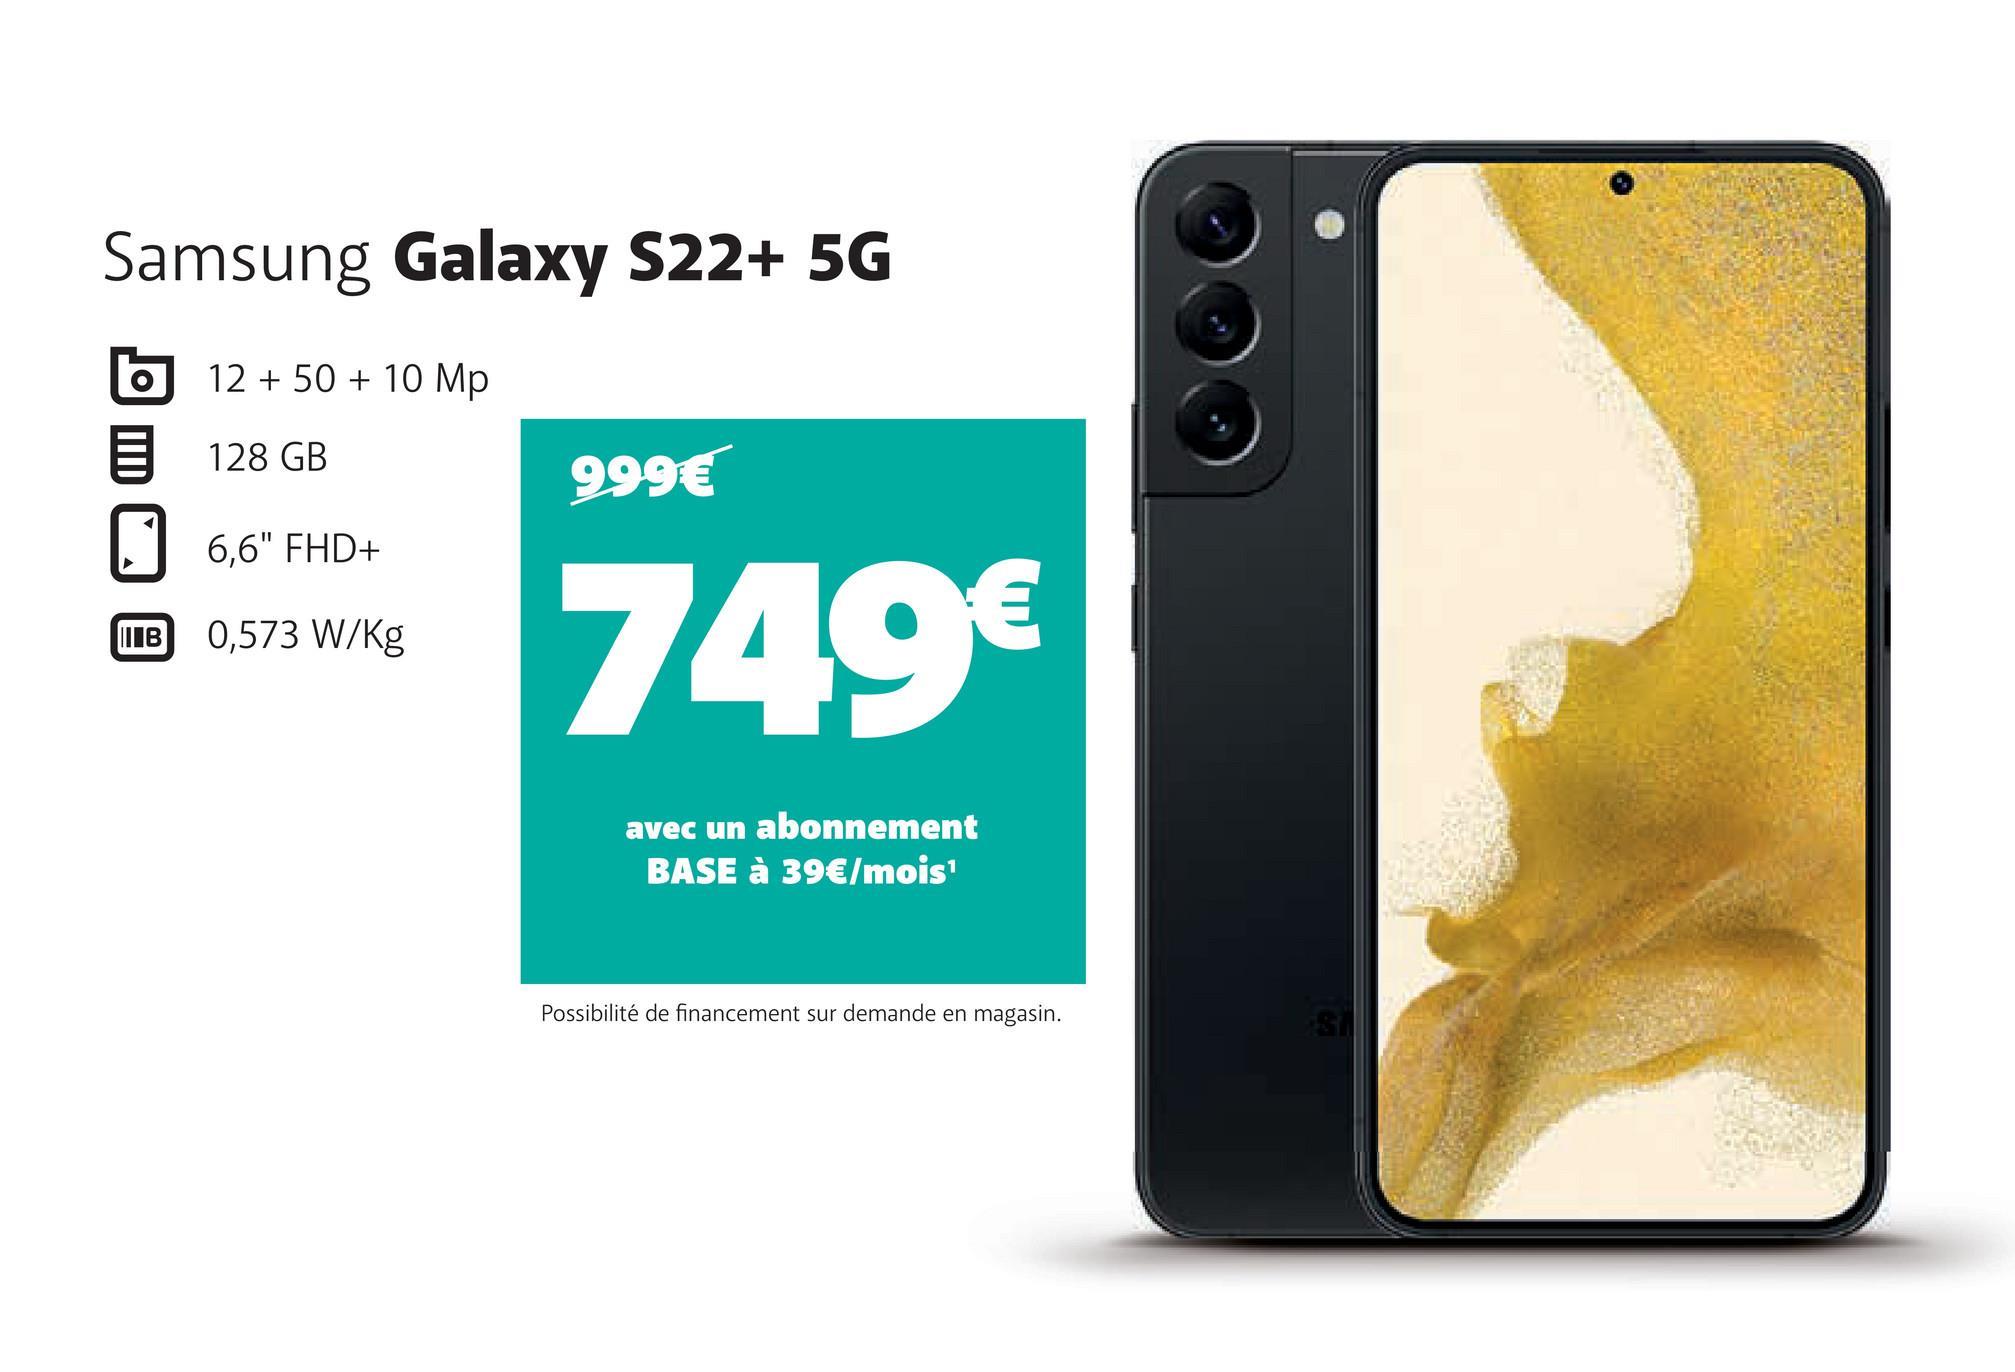 Samsung Galaxy S22+ 5G
12 + 50 + 10 Mp
128 GB
O
6,6" FHD+
B 0,573 W/Kg
999€
749€
avec un abonnement
BASE à 39€/mois¹
Possibilité de financement sur demande en magasin.